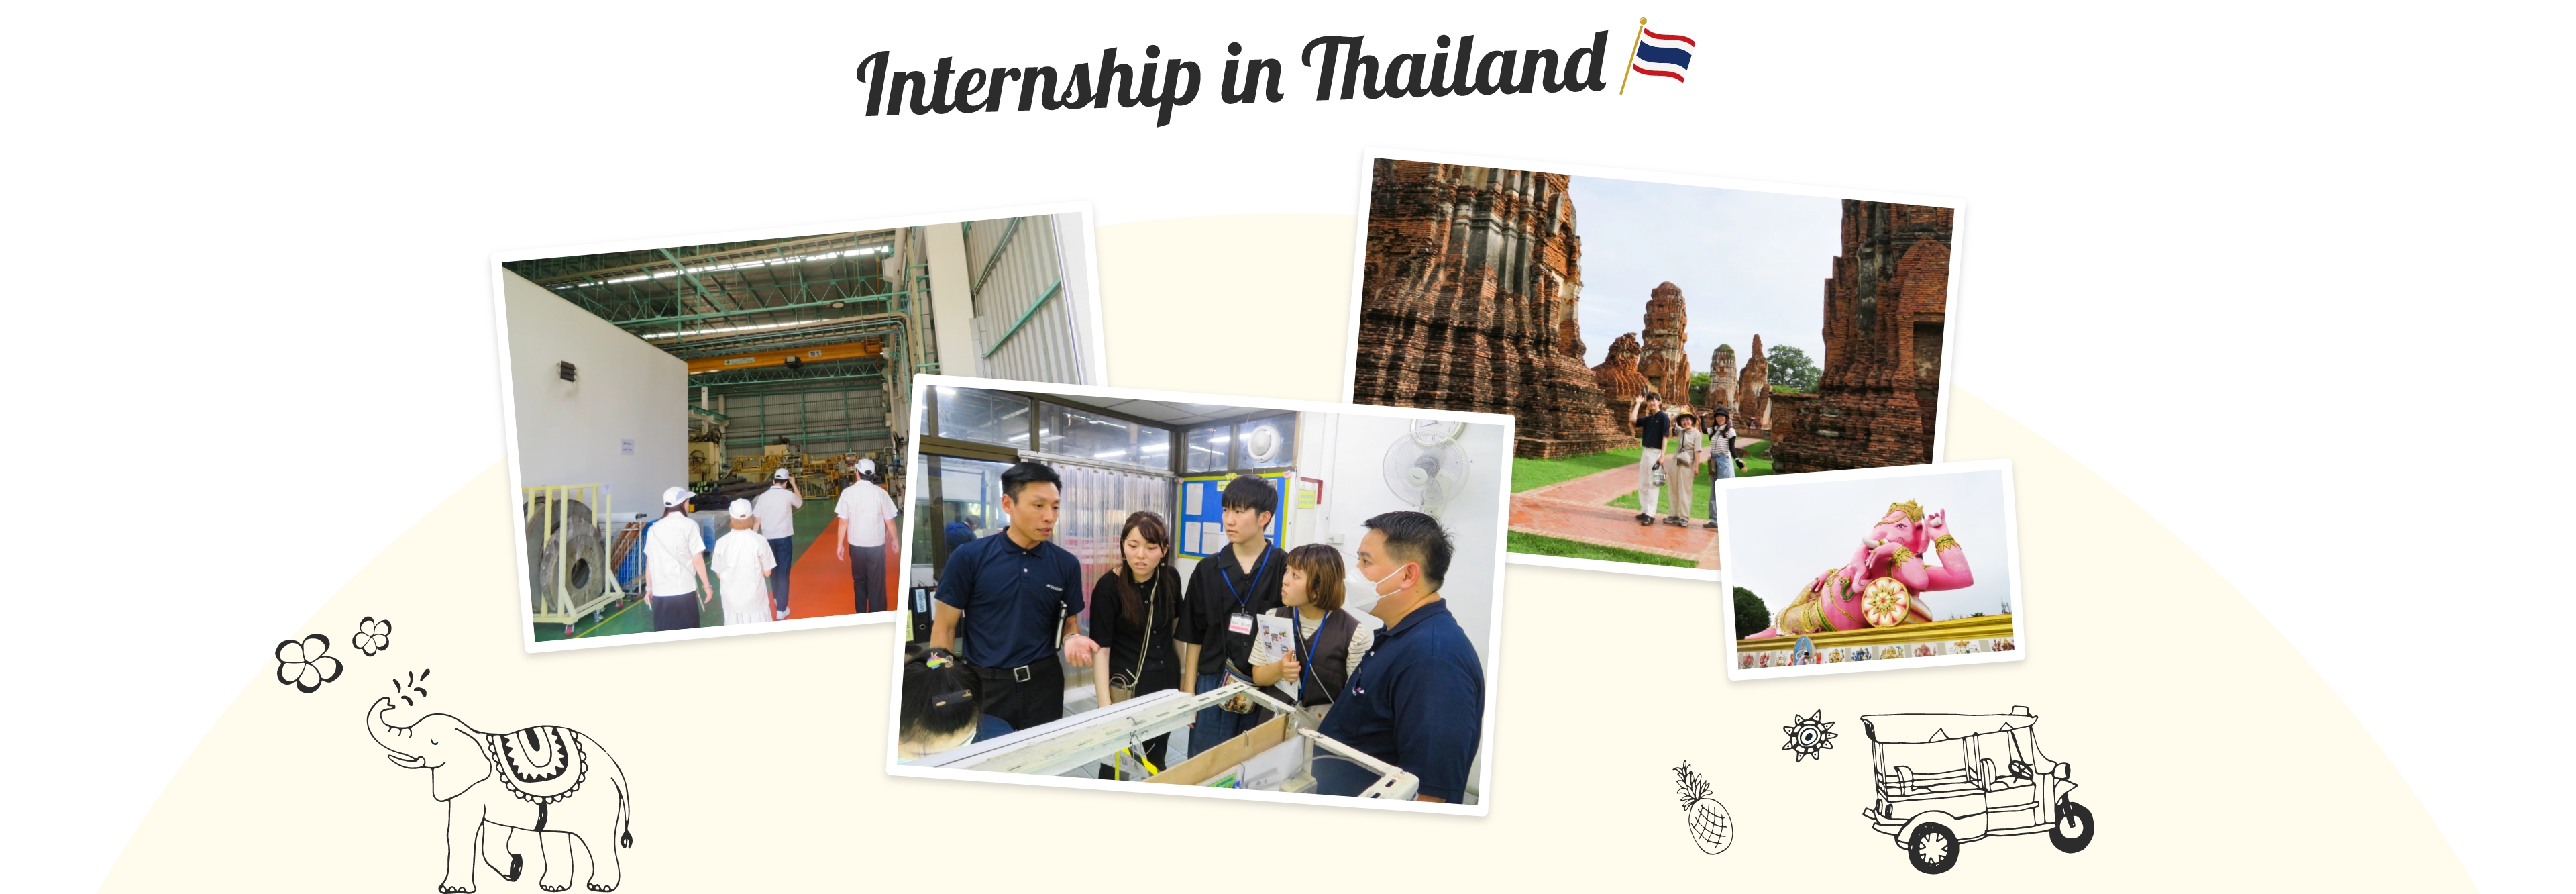 internship_in_thailand